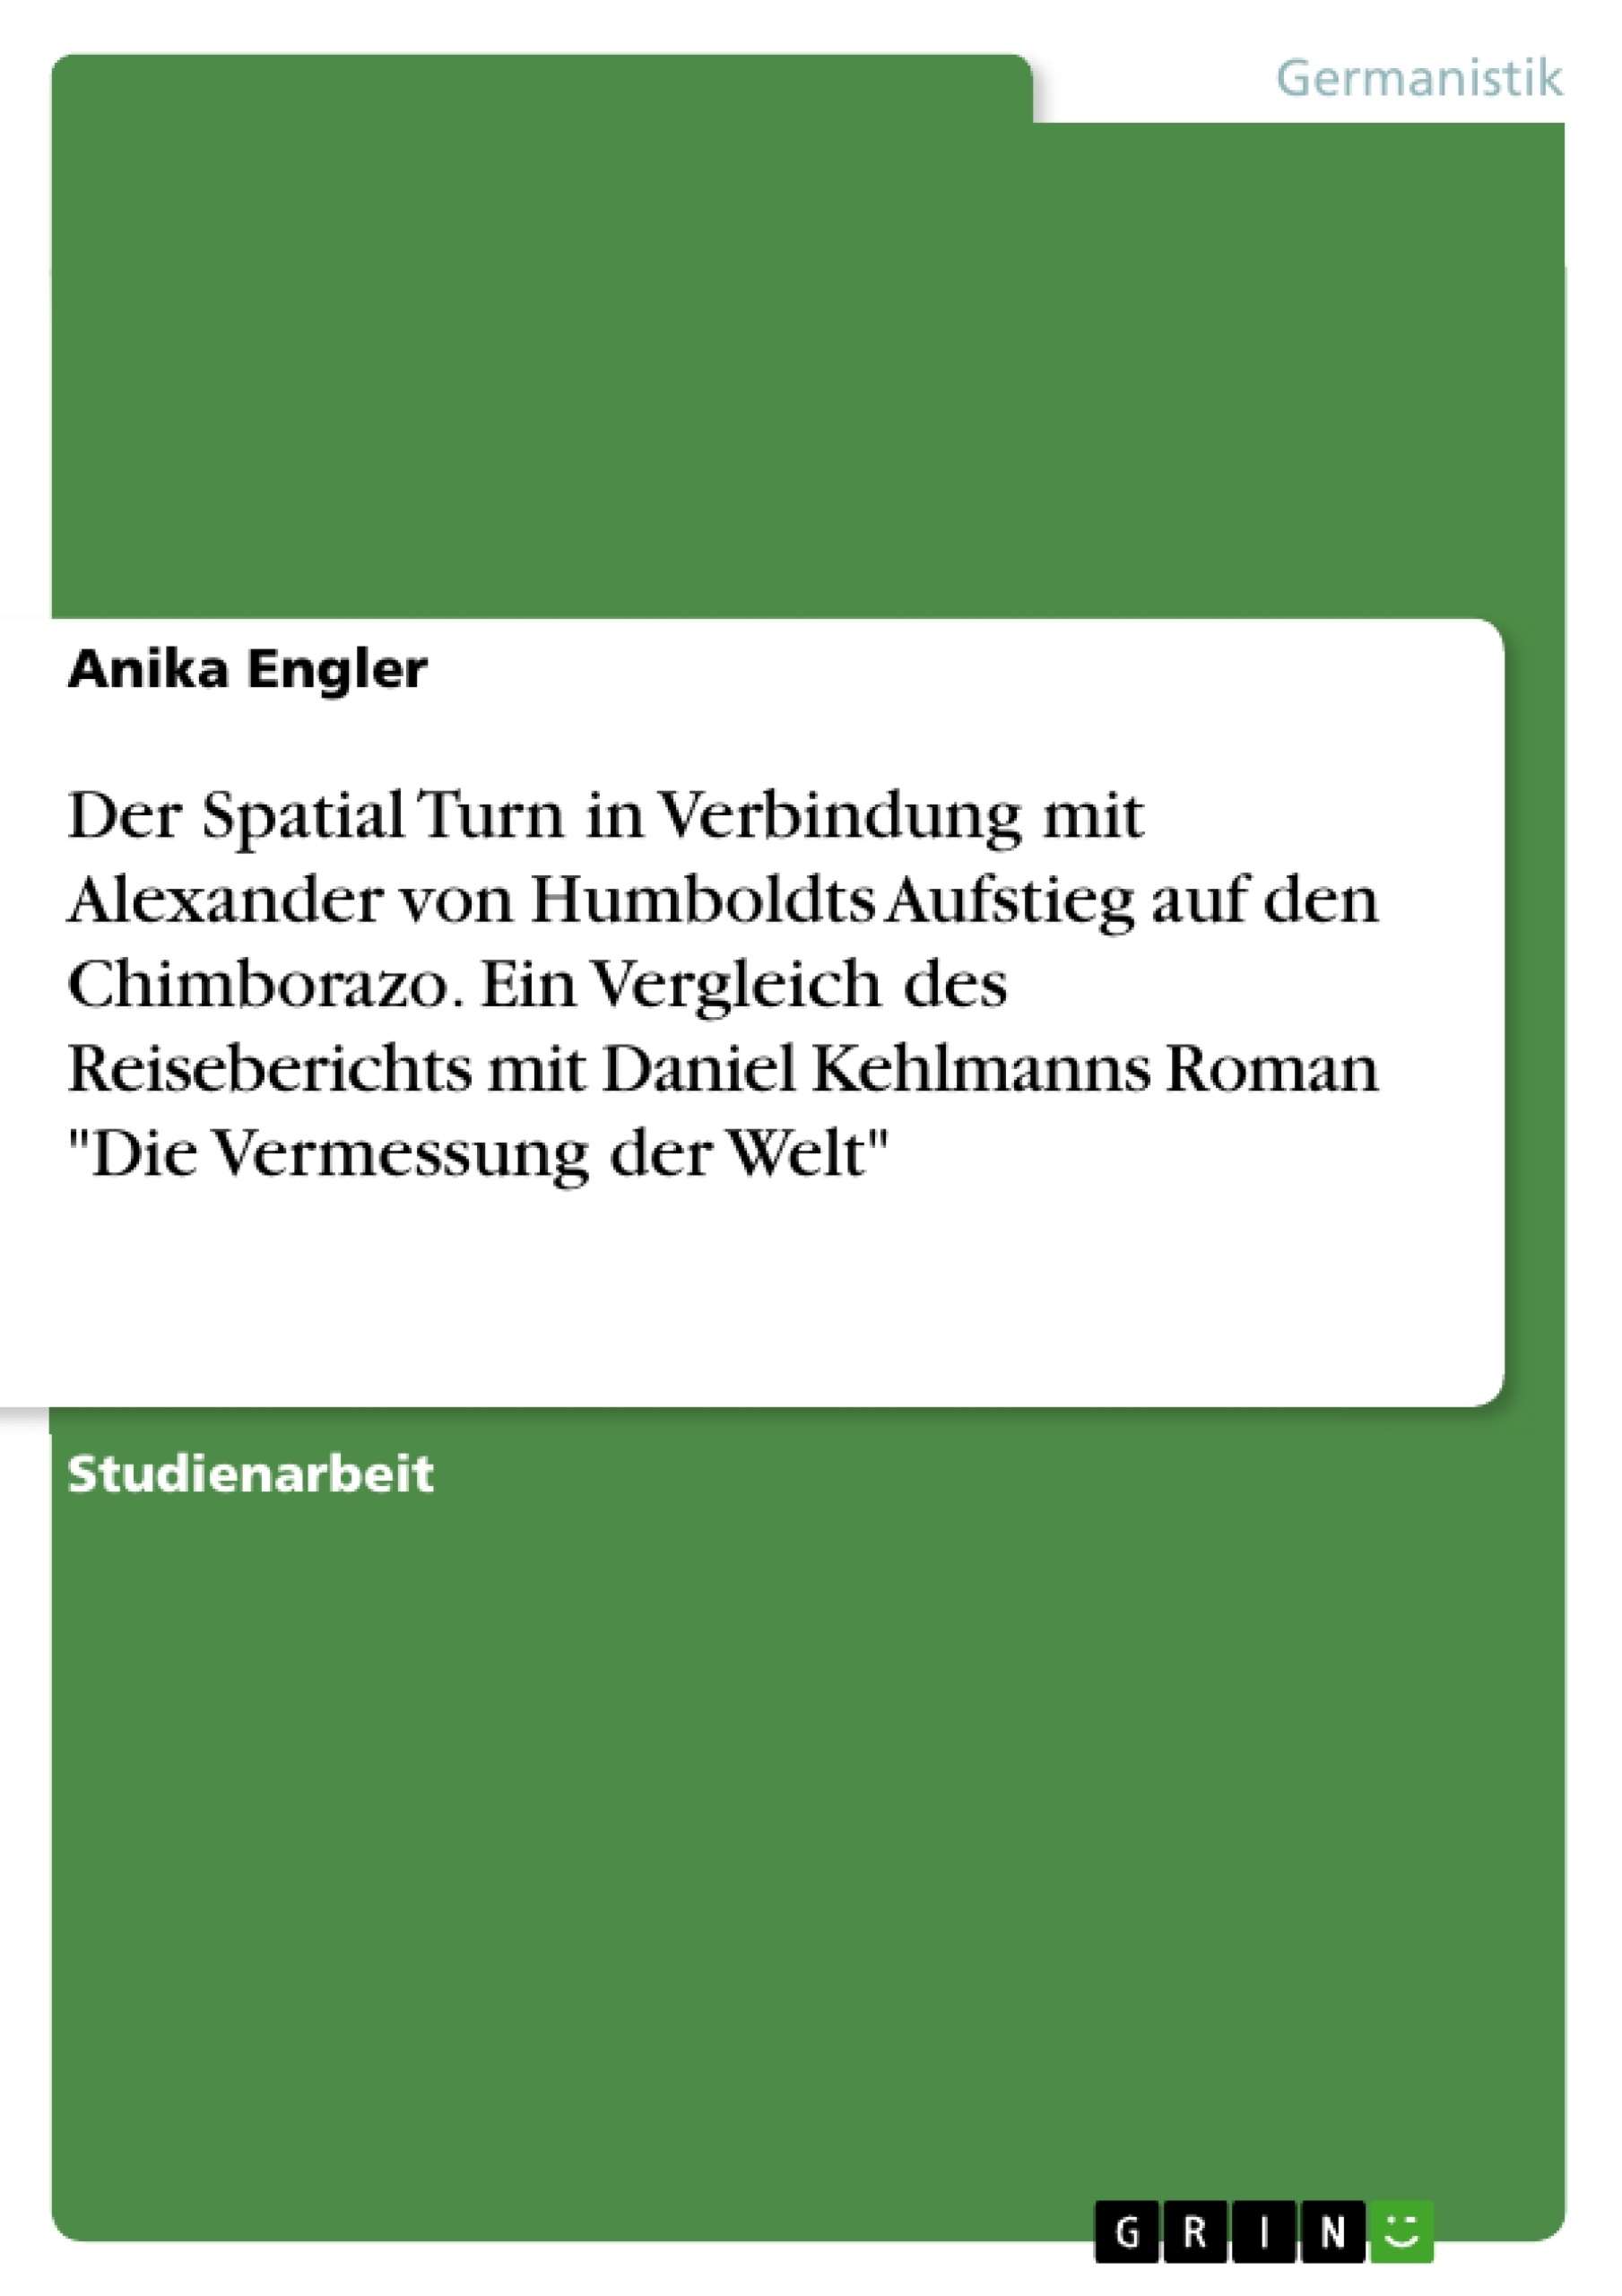 Title: Der Spatial Turn in Verbindung mit Alexander von Humboldts Aufstieg auf den Chimborazo. Ein Vergleich des Reiseberichts mit Daniel Kehlmanns Roman "Die Vermessung der Welt"